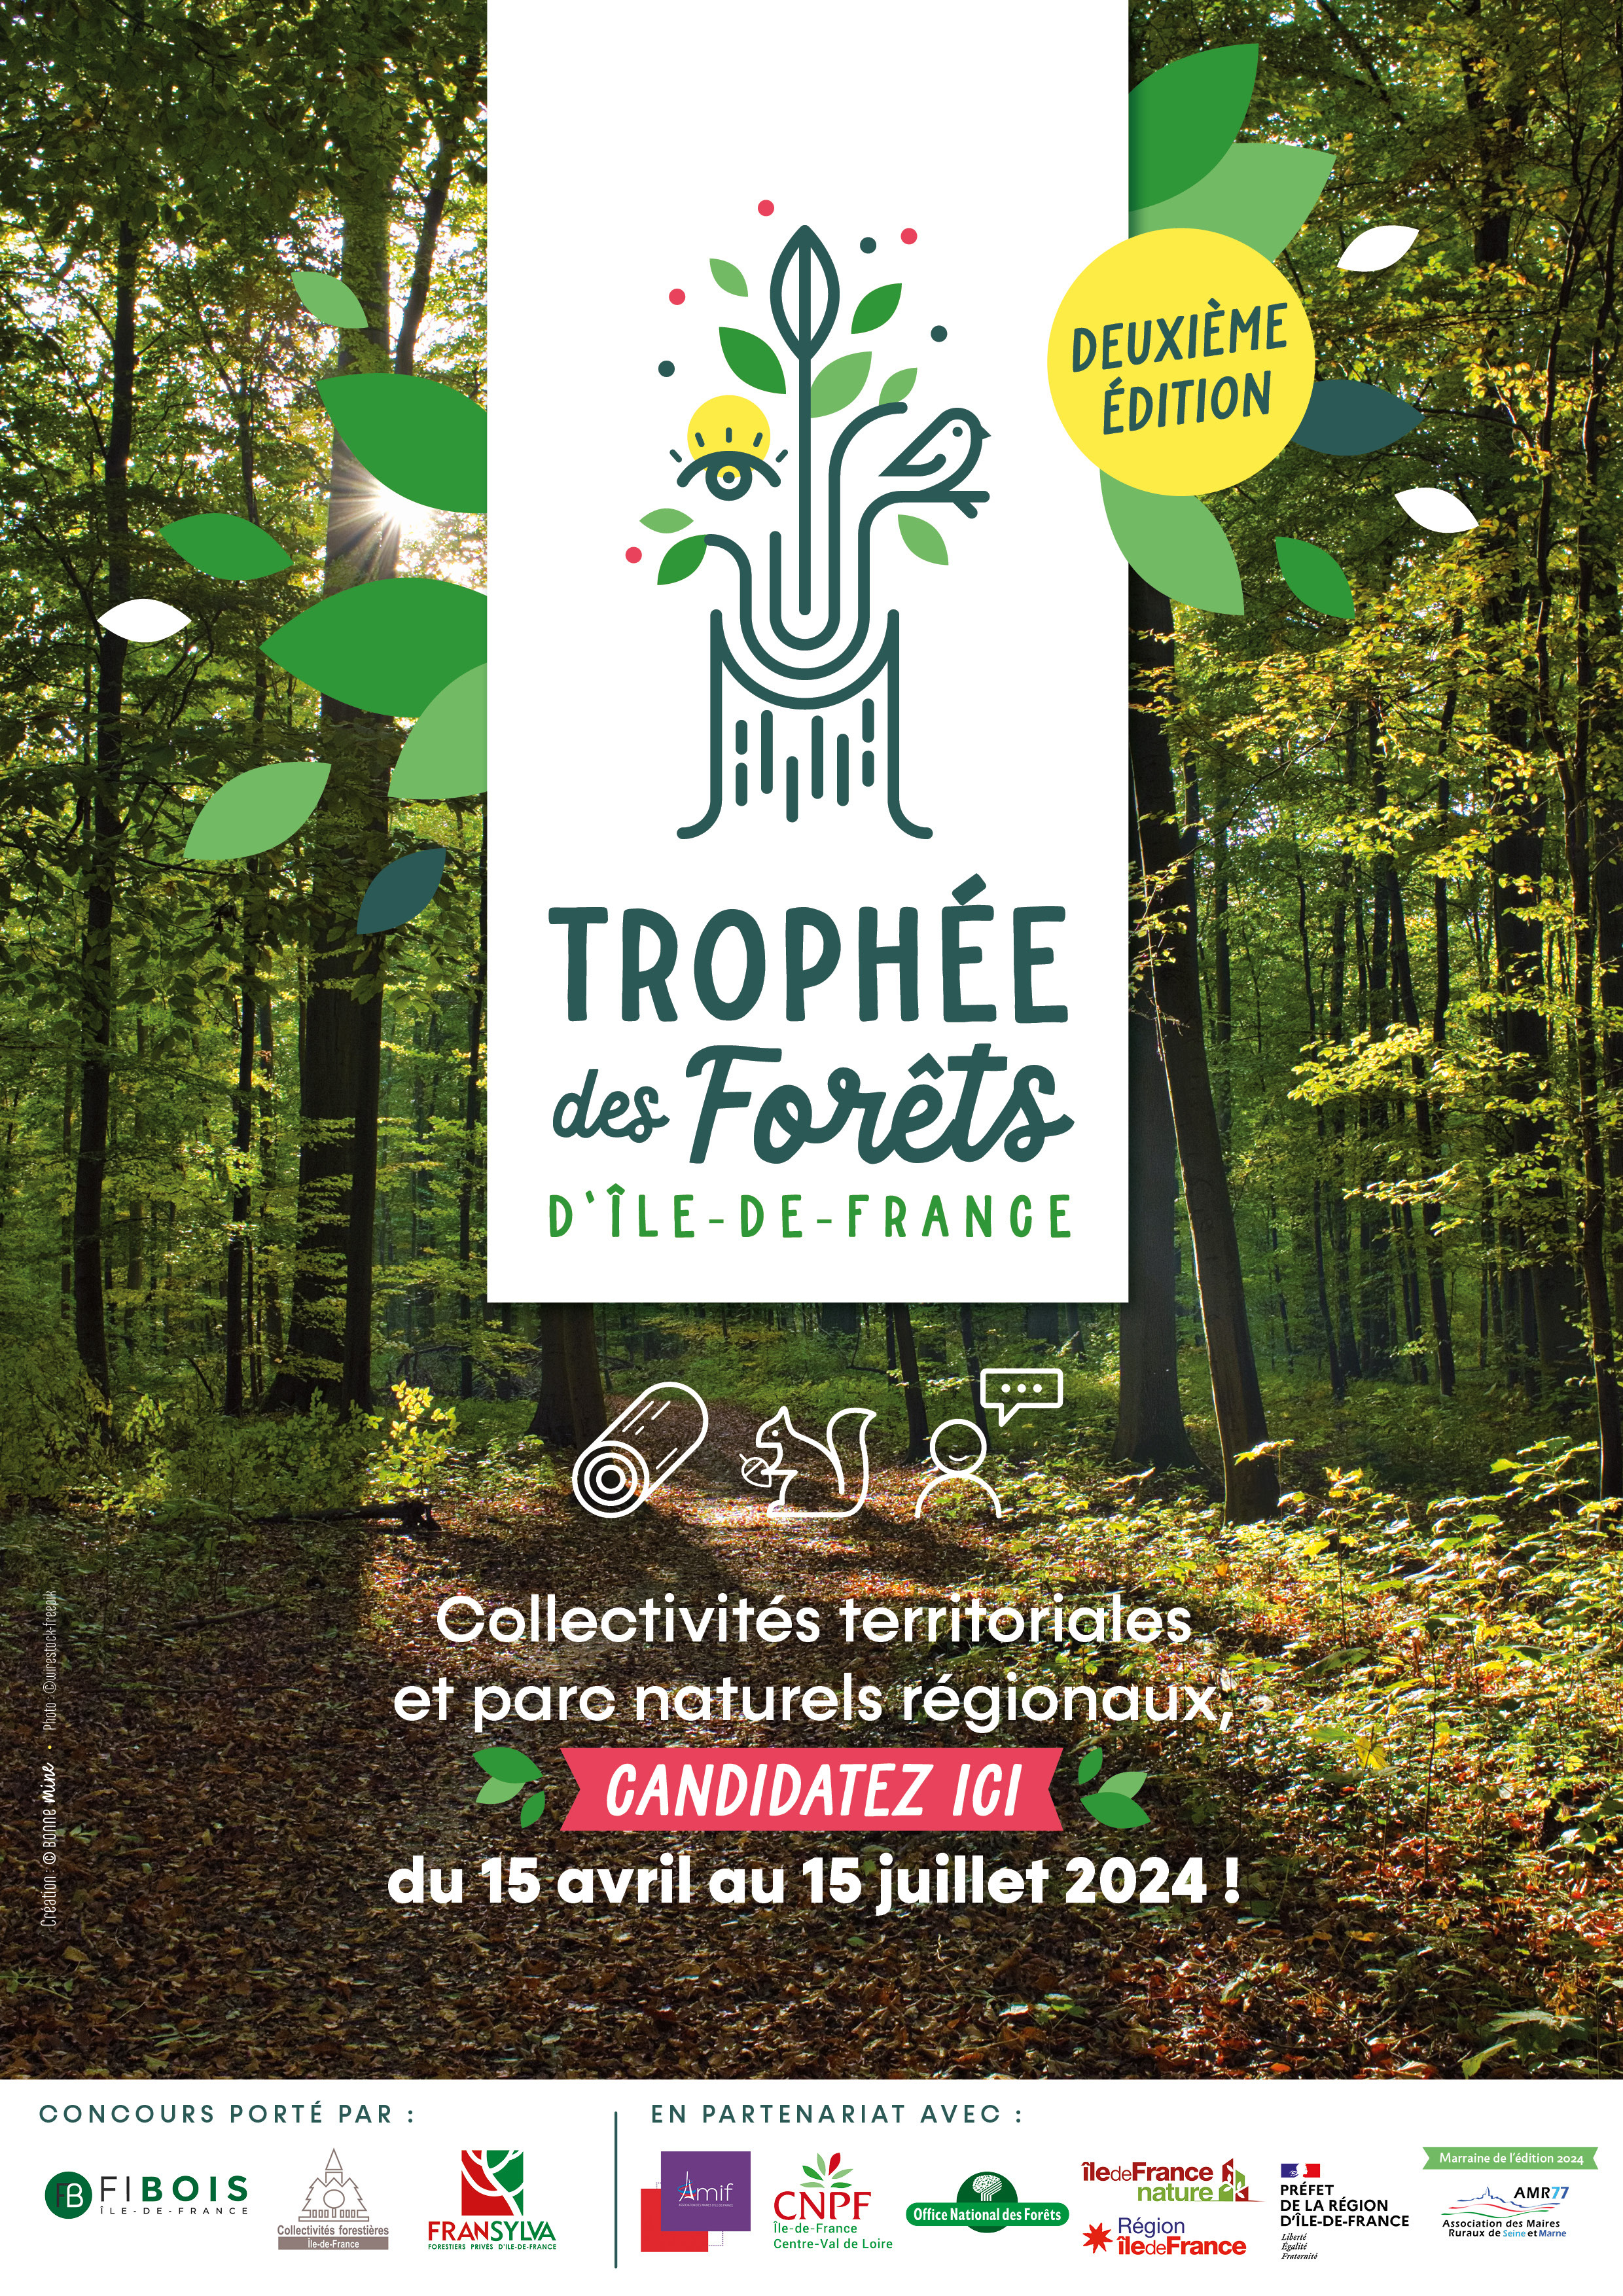 Deuxième édition du Trophée des Forêts d'Île-de-France